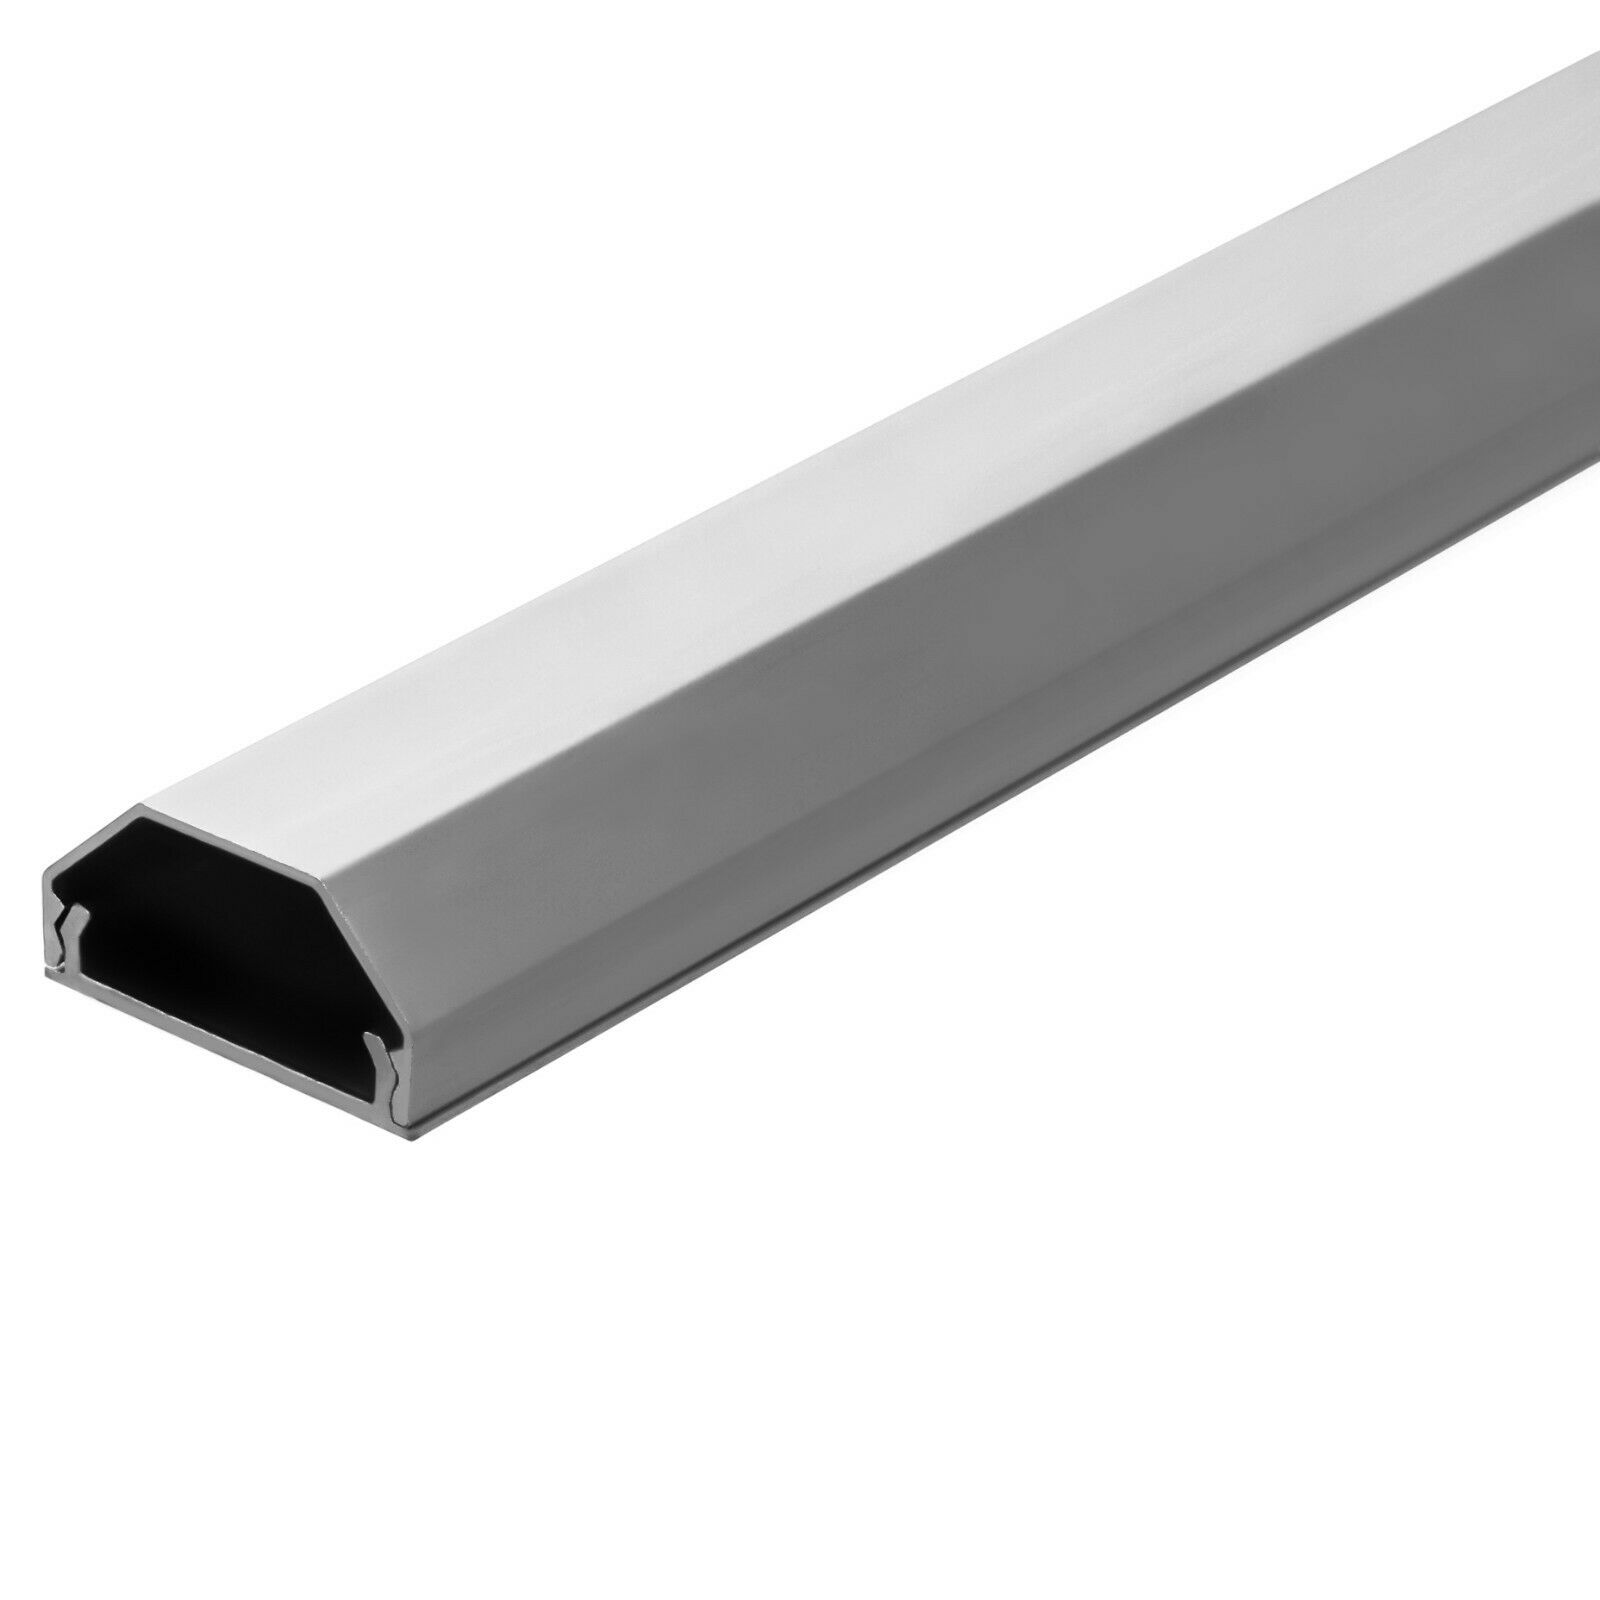 Hliníkový profil / kabelová lišta 75 cm 2. jakost Barva: Stříbrná, Samolepicí páska: Ano, Šířka profilu: 33 mm